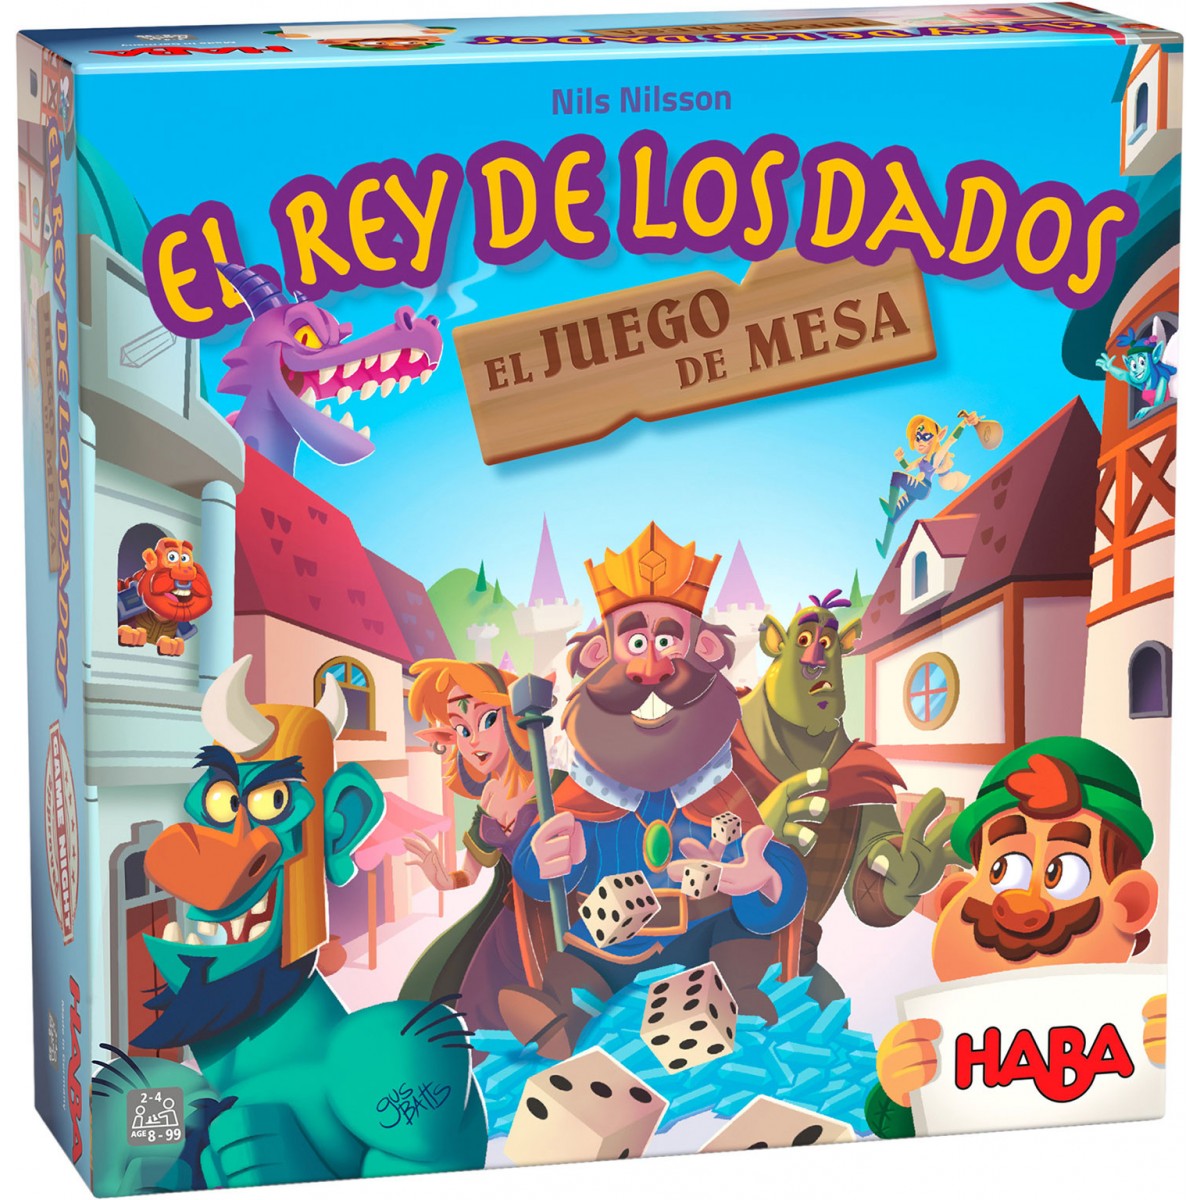 EL REY DE LOS DADOS Cómo se juega / Tutorial Juegos de mesa - HABA 